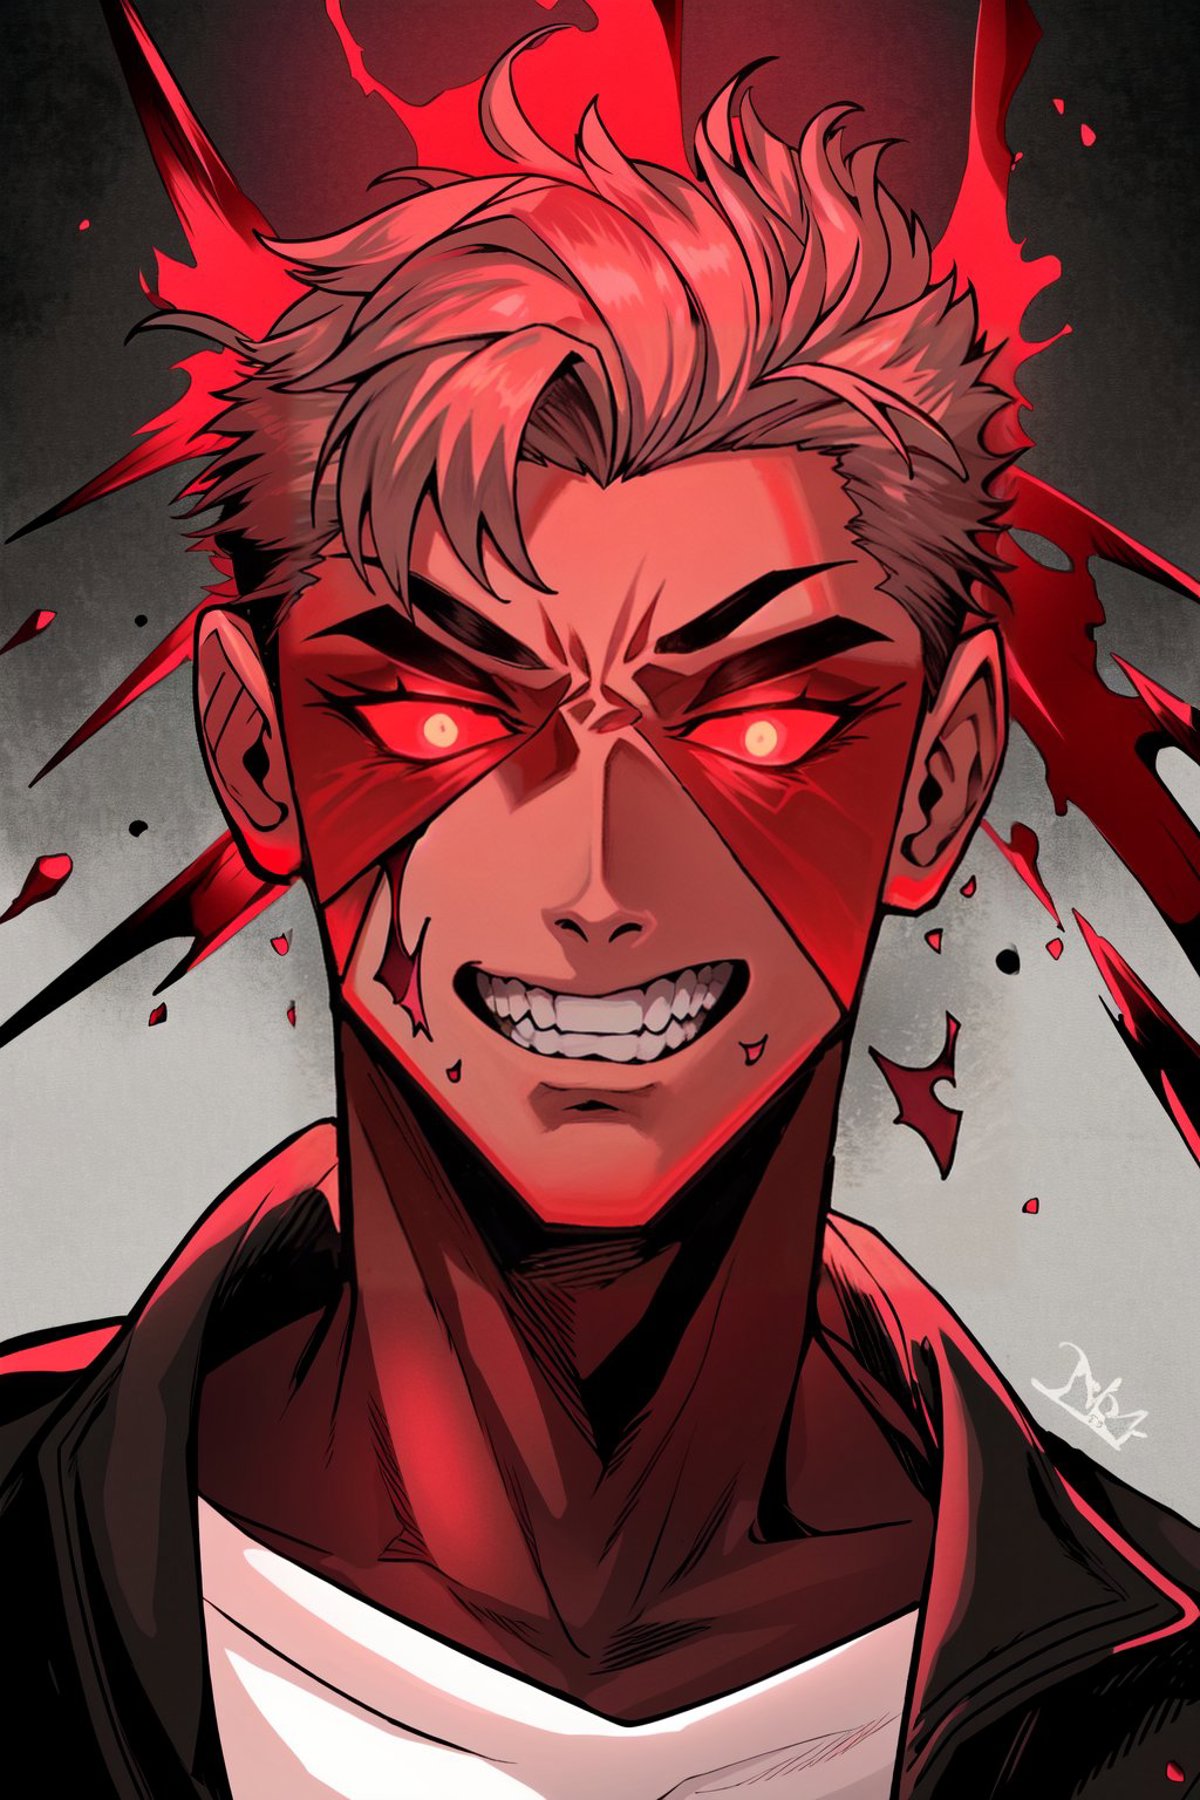 White Blood Manga style image by Mixon